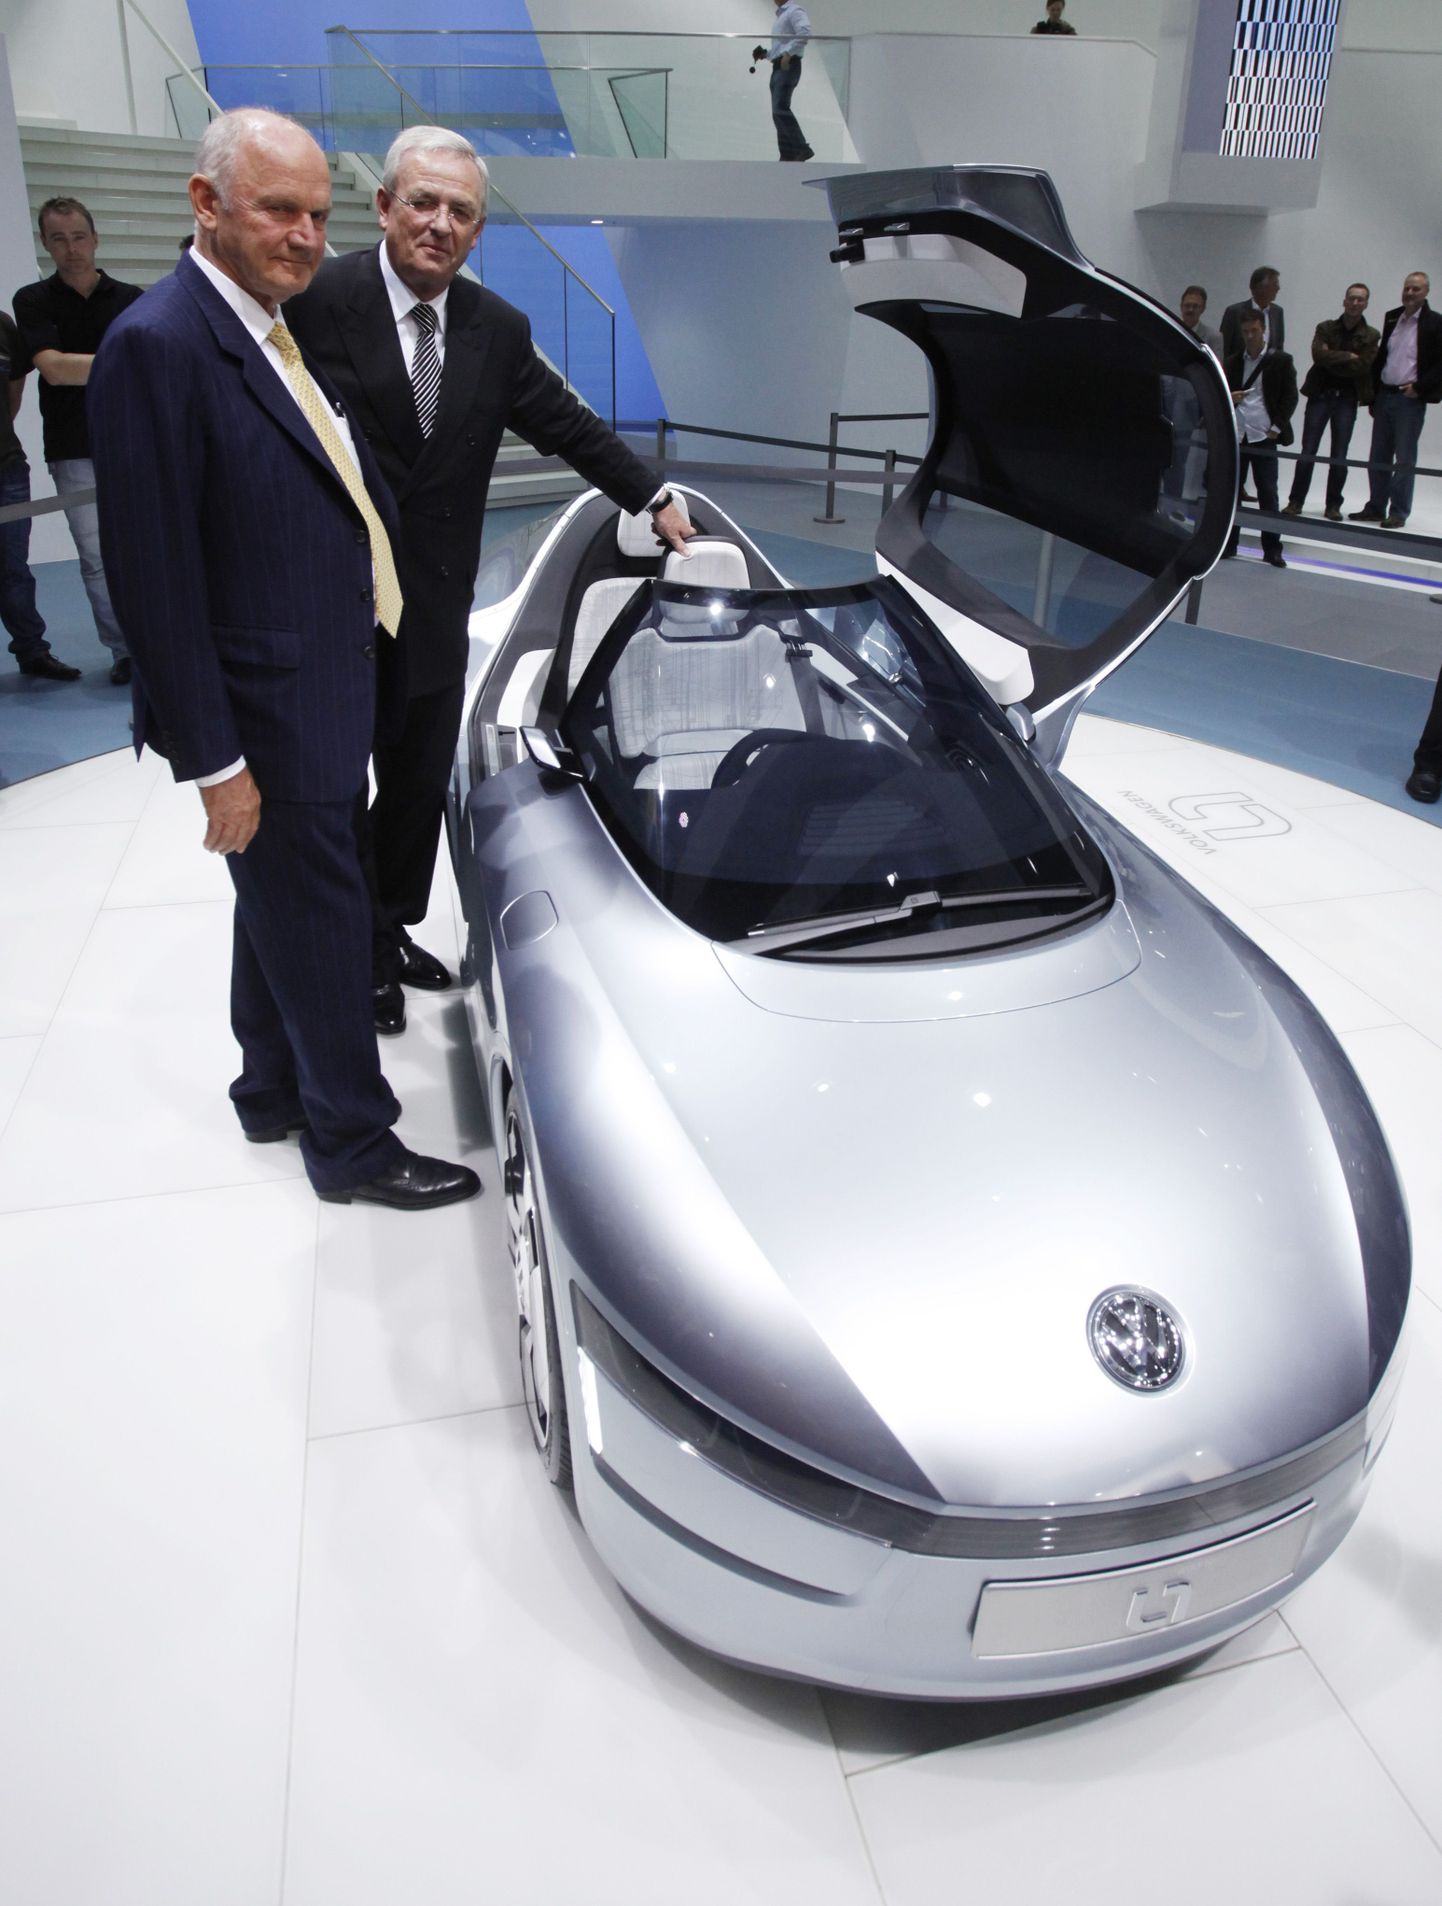 Volkswagen AG tegevjuht Martin Winterkorn (paremal) ja nõukogu esimees Ferdinand Piëch Frankfurdi autonäitusel VW L1 kontseptsioonautot tutvustamas. Nüüd on Piëch Winterkorniga tülli pööranud, ähvardades tegevjuhti vallandada.